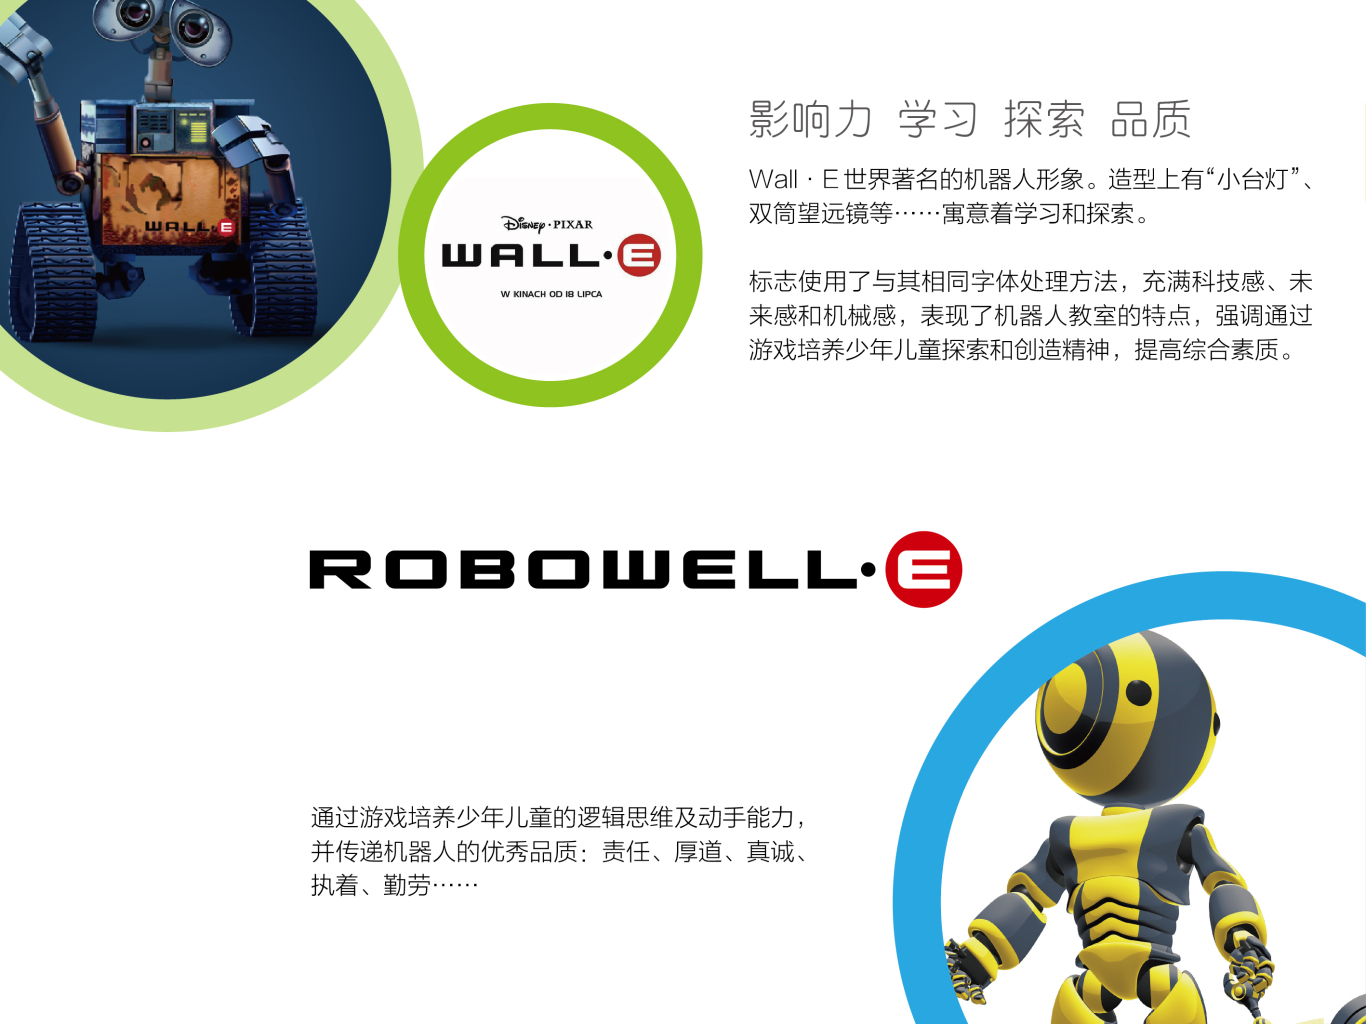 洛博瓦力机器人教室品牌形象图2